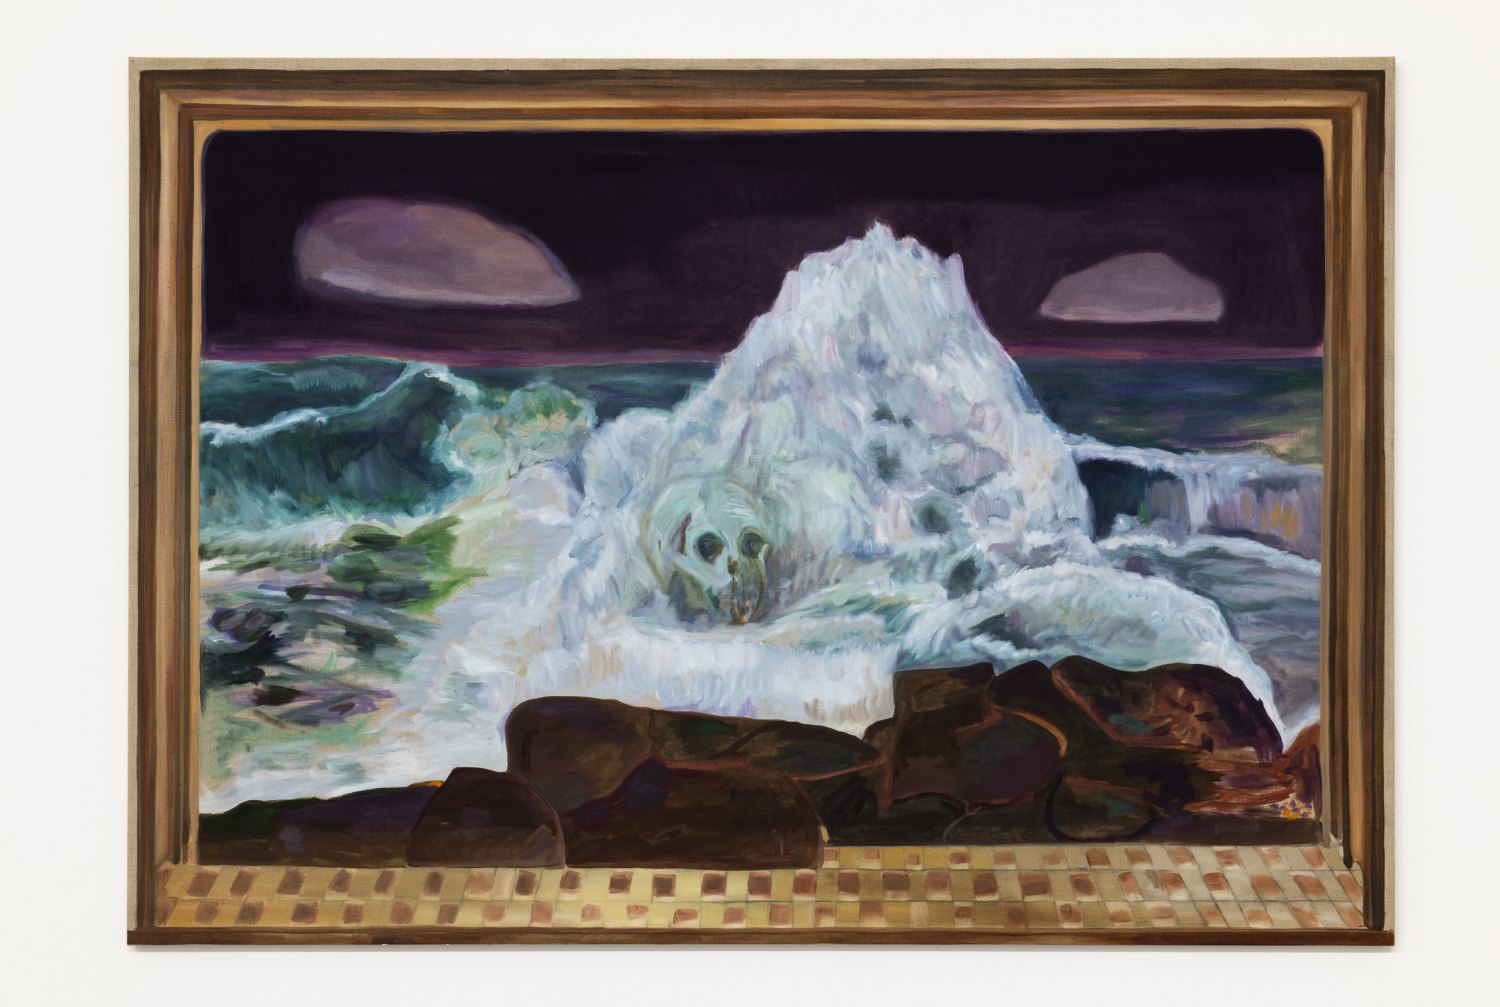 Jill Mulleady The Green Wave, 2018 Oil on linen, 122 x 174 cm